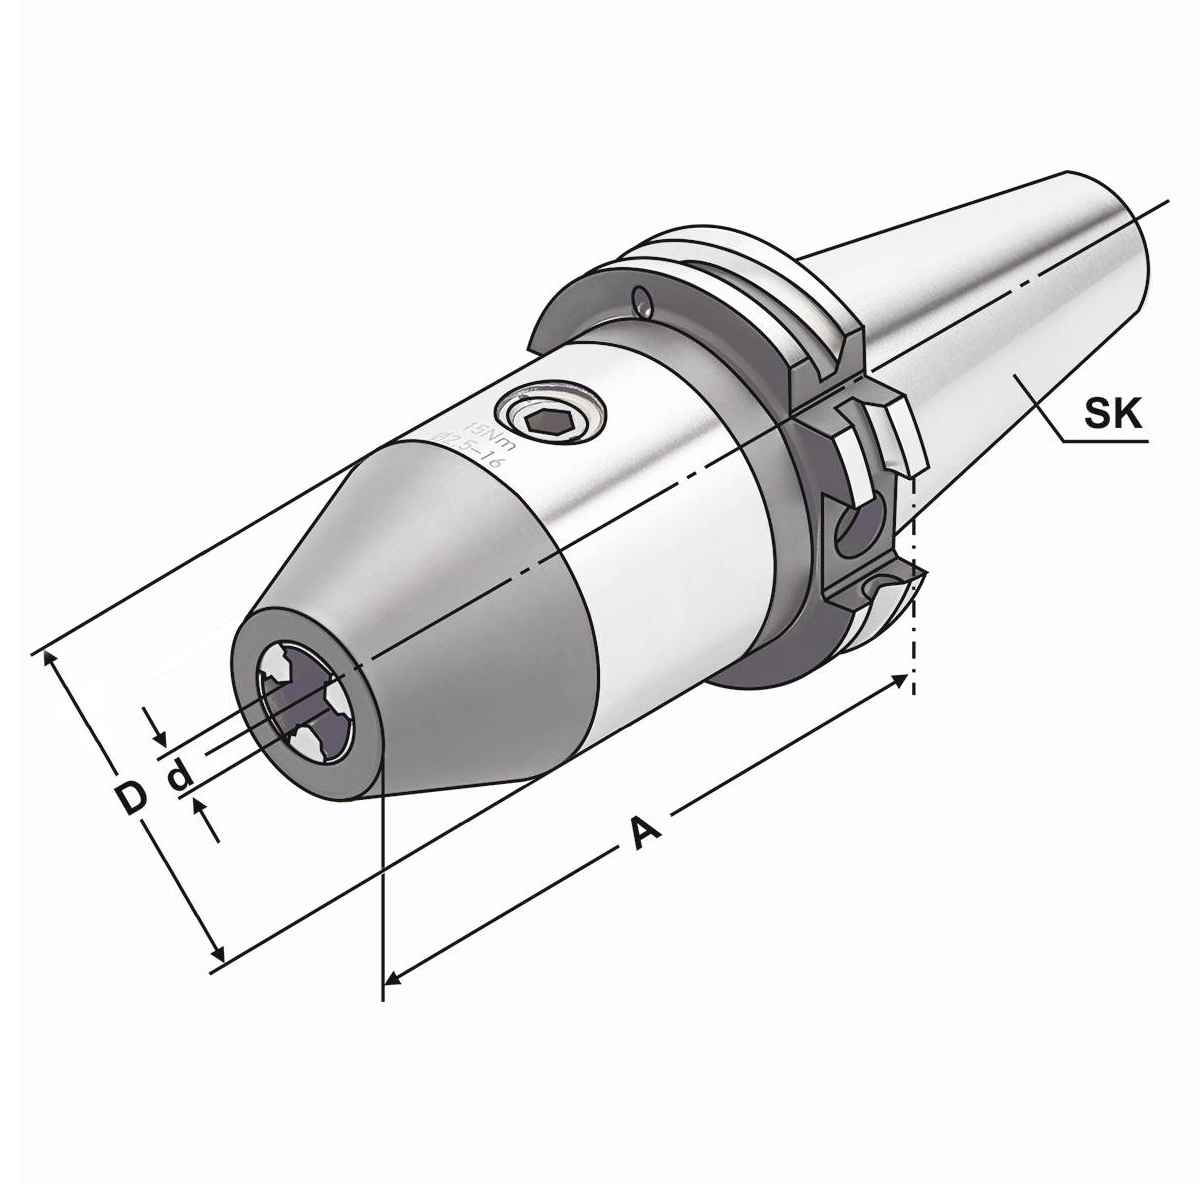 CNC-Bohrfutter SK 30-0/8-70 DIN 69871 AD